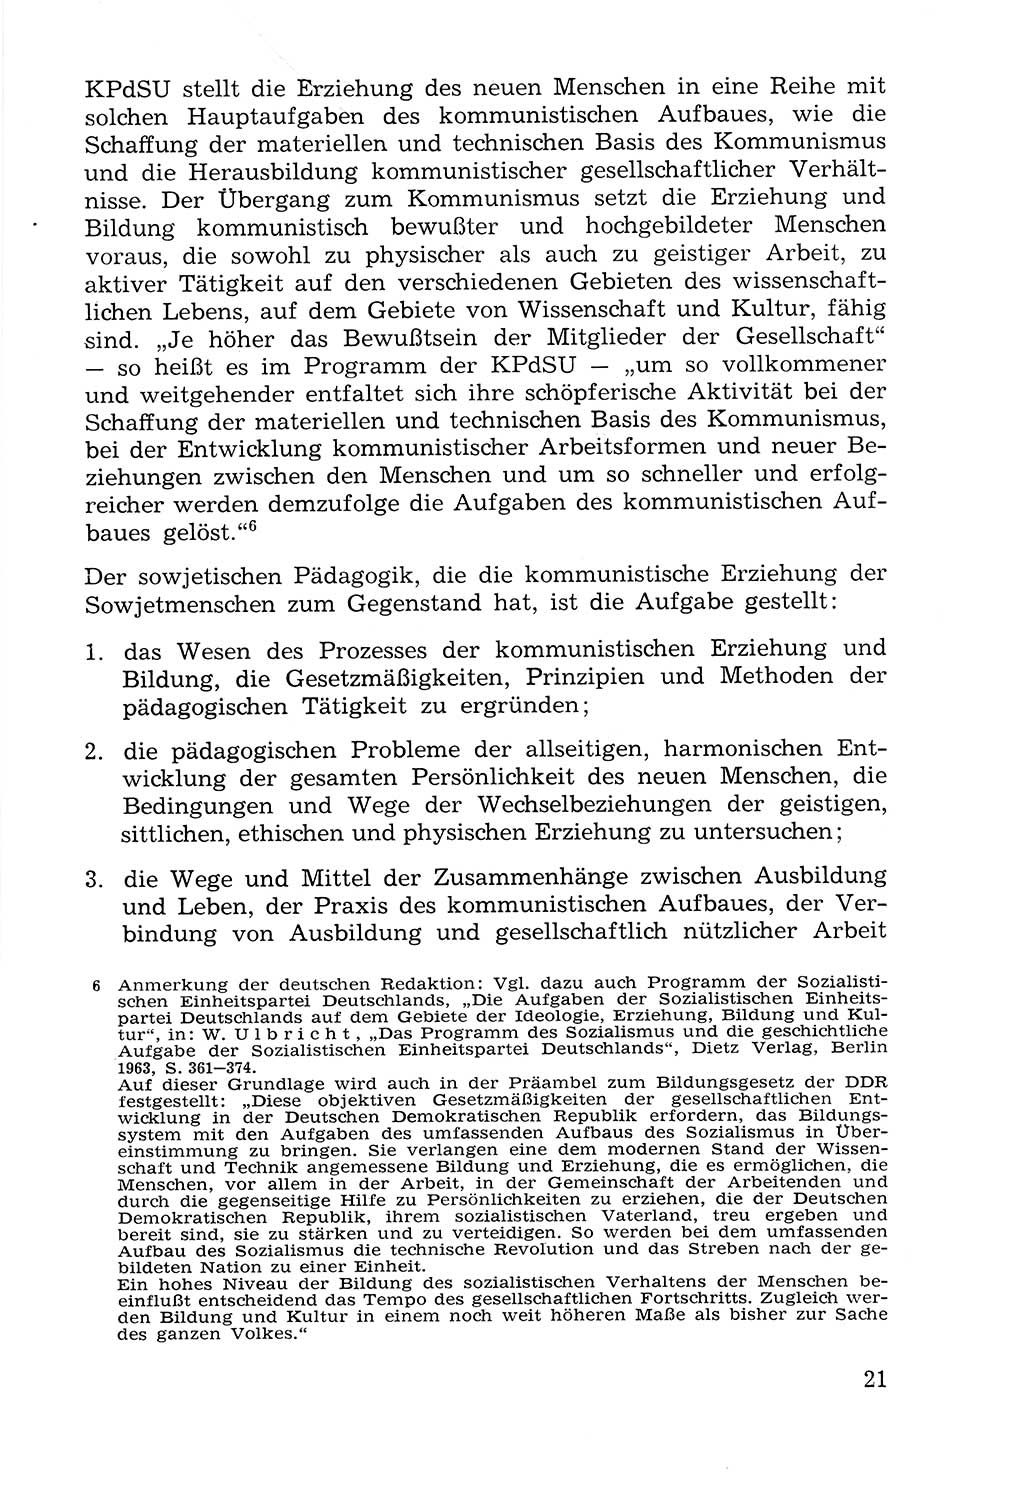 Lehrbuch der Strafvollzugspädagogik [Deutsche Demokratische Republik (DDR)] 1969, Seite 21 (Lb. SV-Pd. DDR 1969, S. 21)